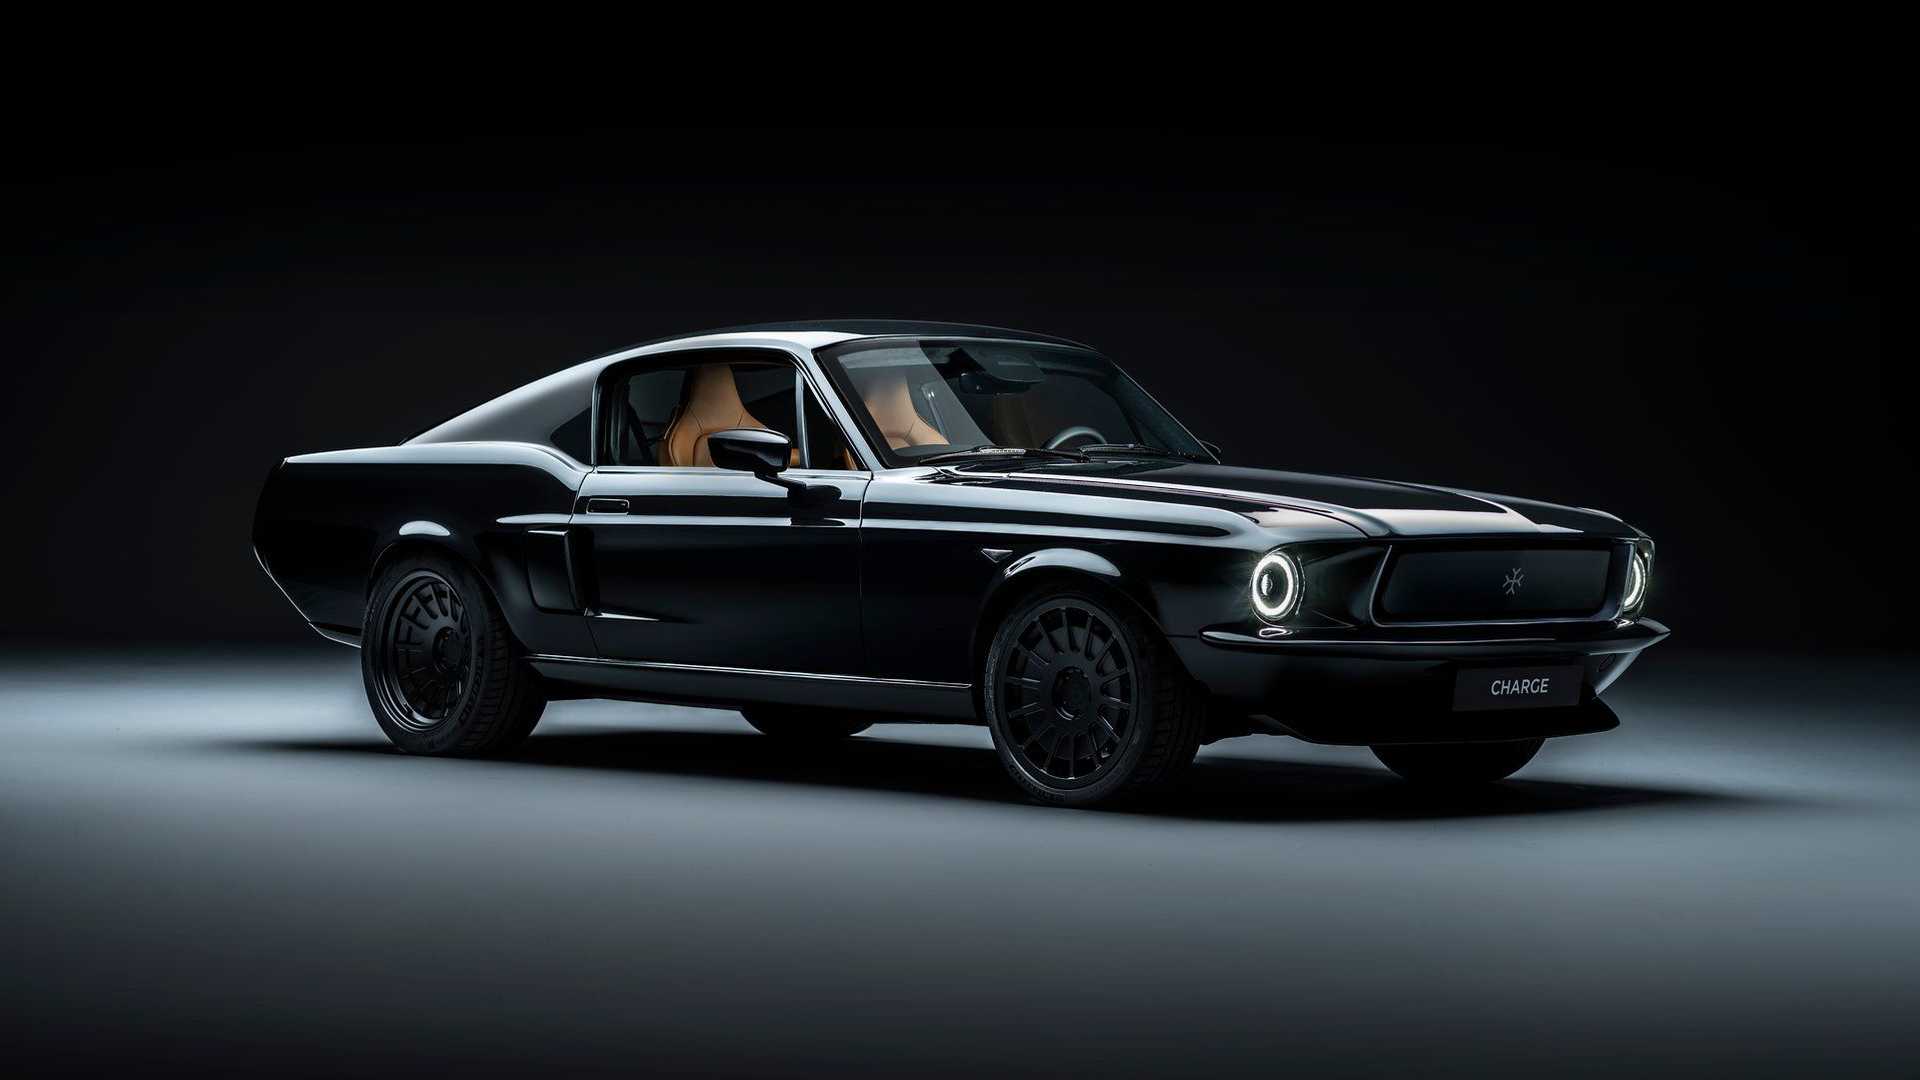 เปิดราคา Ford Mustang 1967 ที่แปลงหัวใจเป็นไฟฟ้าถ้ามี 15 ล้านบาทก็พอจะได้ลุ้นเป็นเจ้าของ 